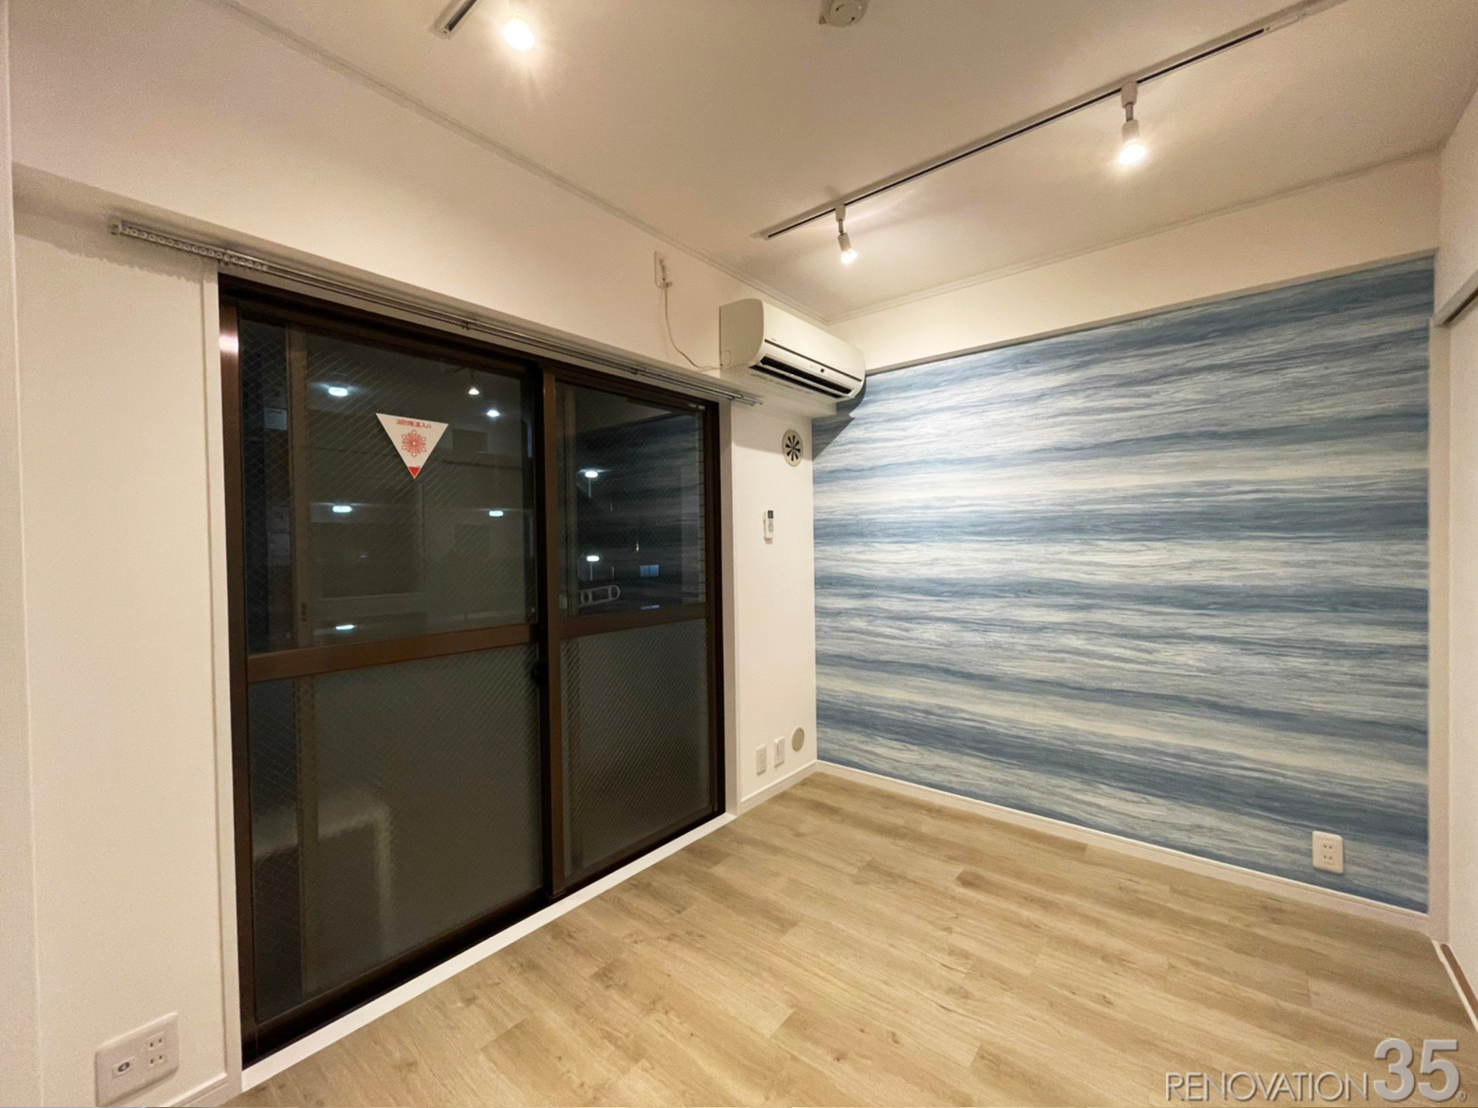 特別なブルー、1Kの空室対策リノベーション埼玉県志木市、AFTER2